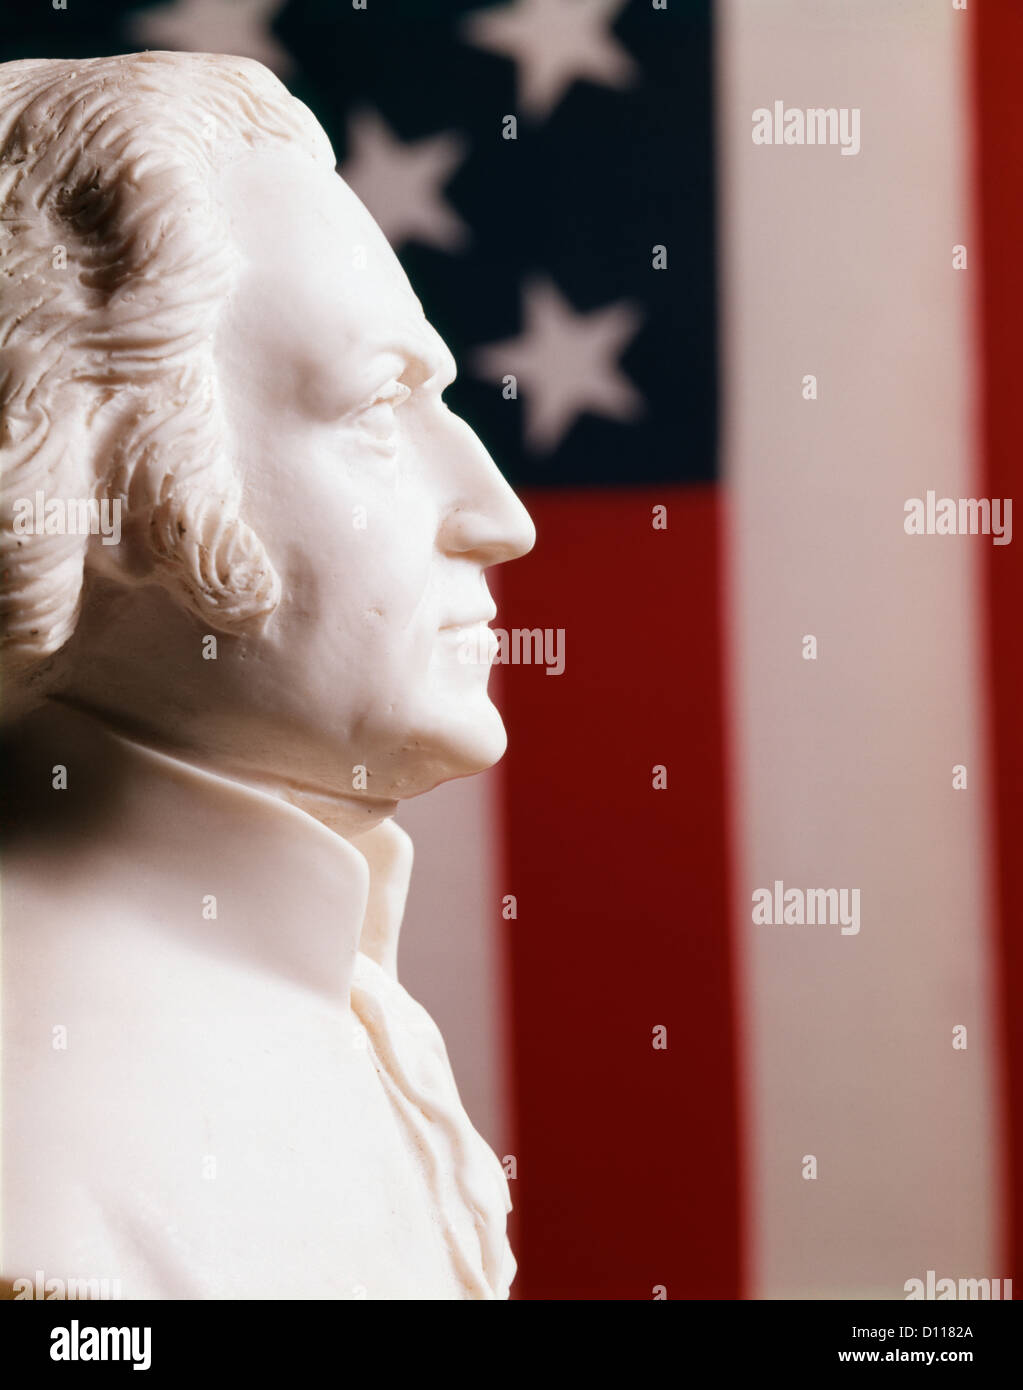 STATUE Buste en plâtre blanc PROFIL GEORGE WASHINGTON PRÉSIDENT AMÉRICAIN STARS FLAG BACKGROUND Banque D'Images